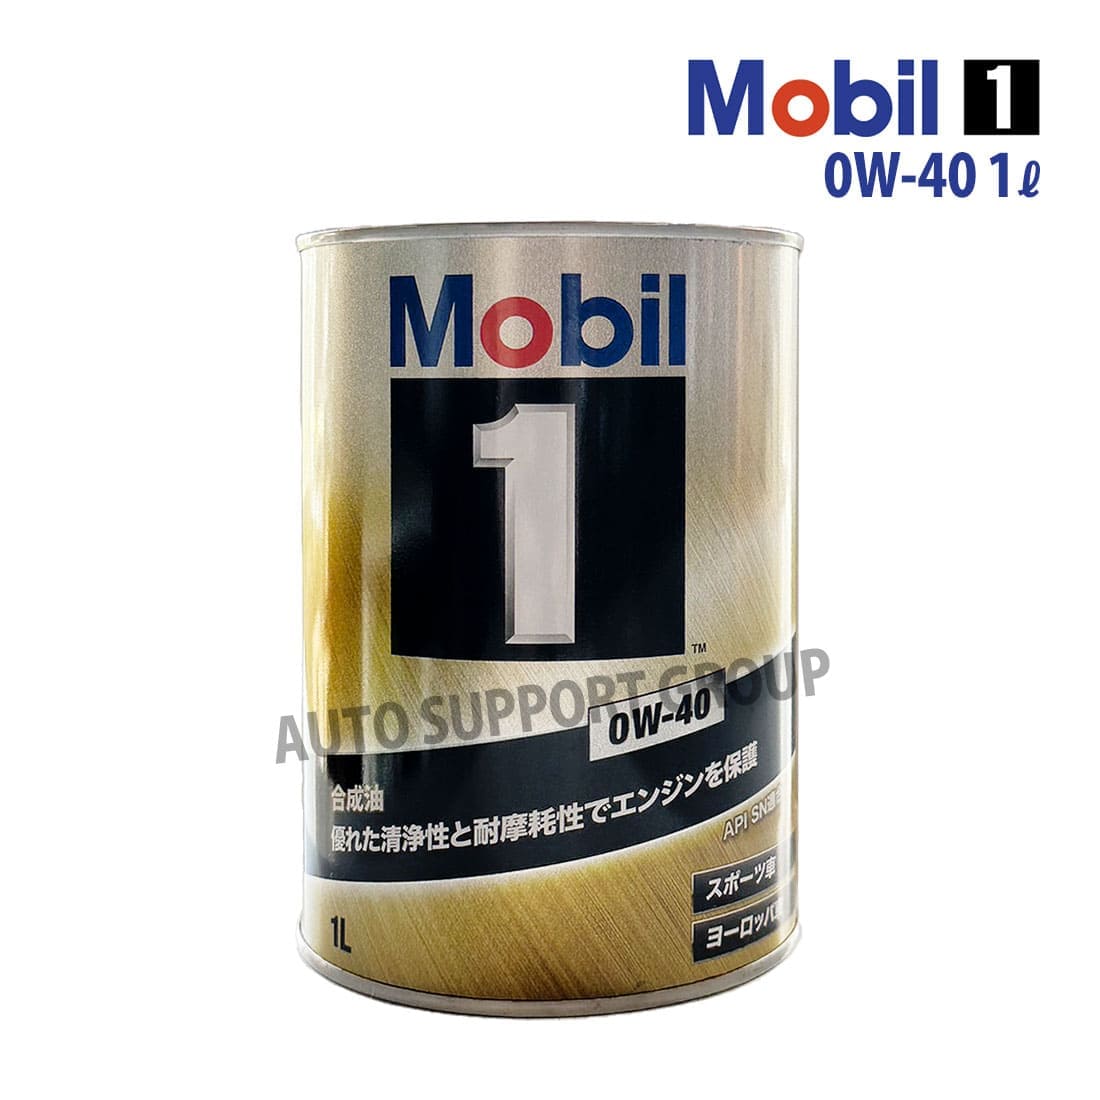 エンジンオイル 0W-40 SN モービル1 Mobil1 1L缶 (1リットル) : ys